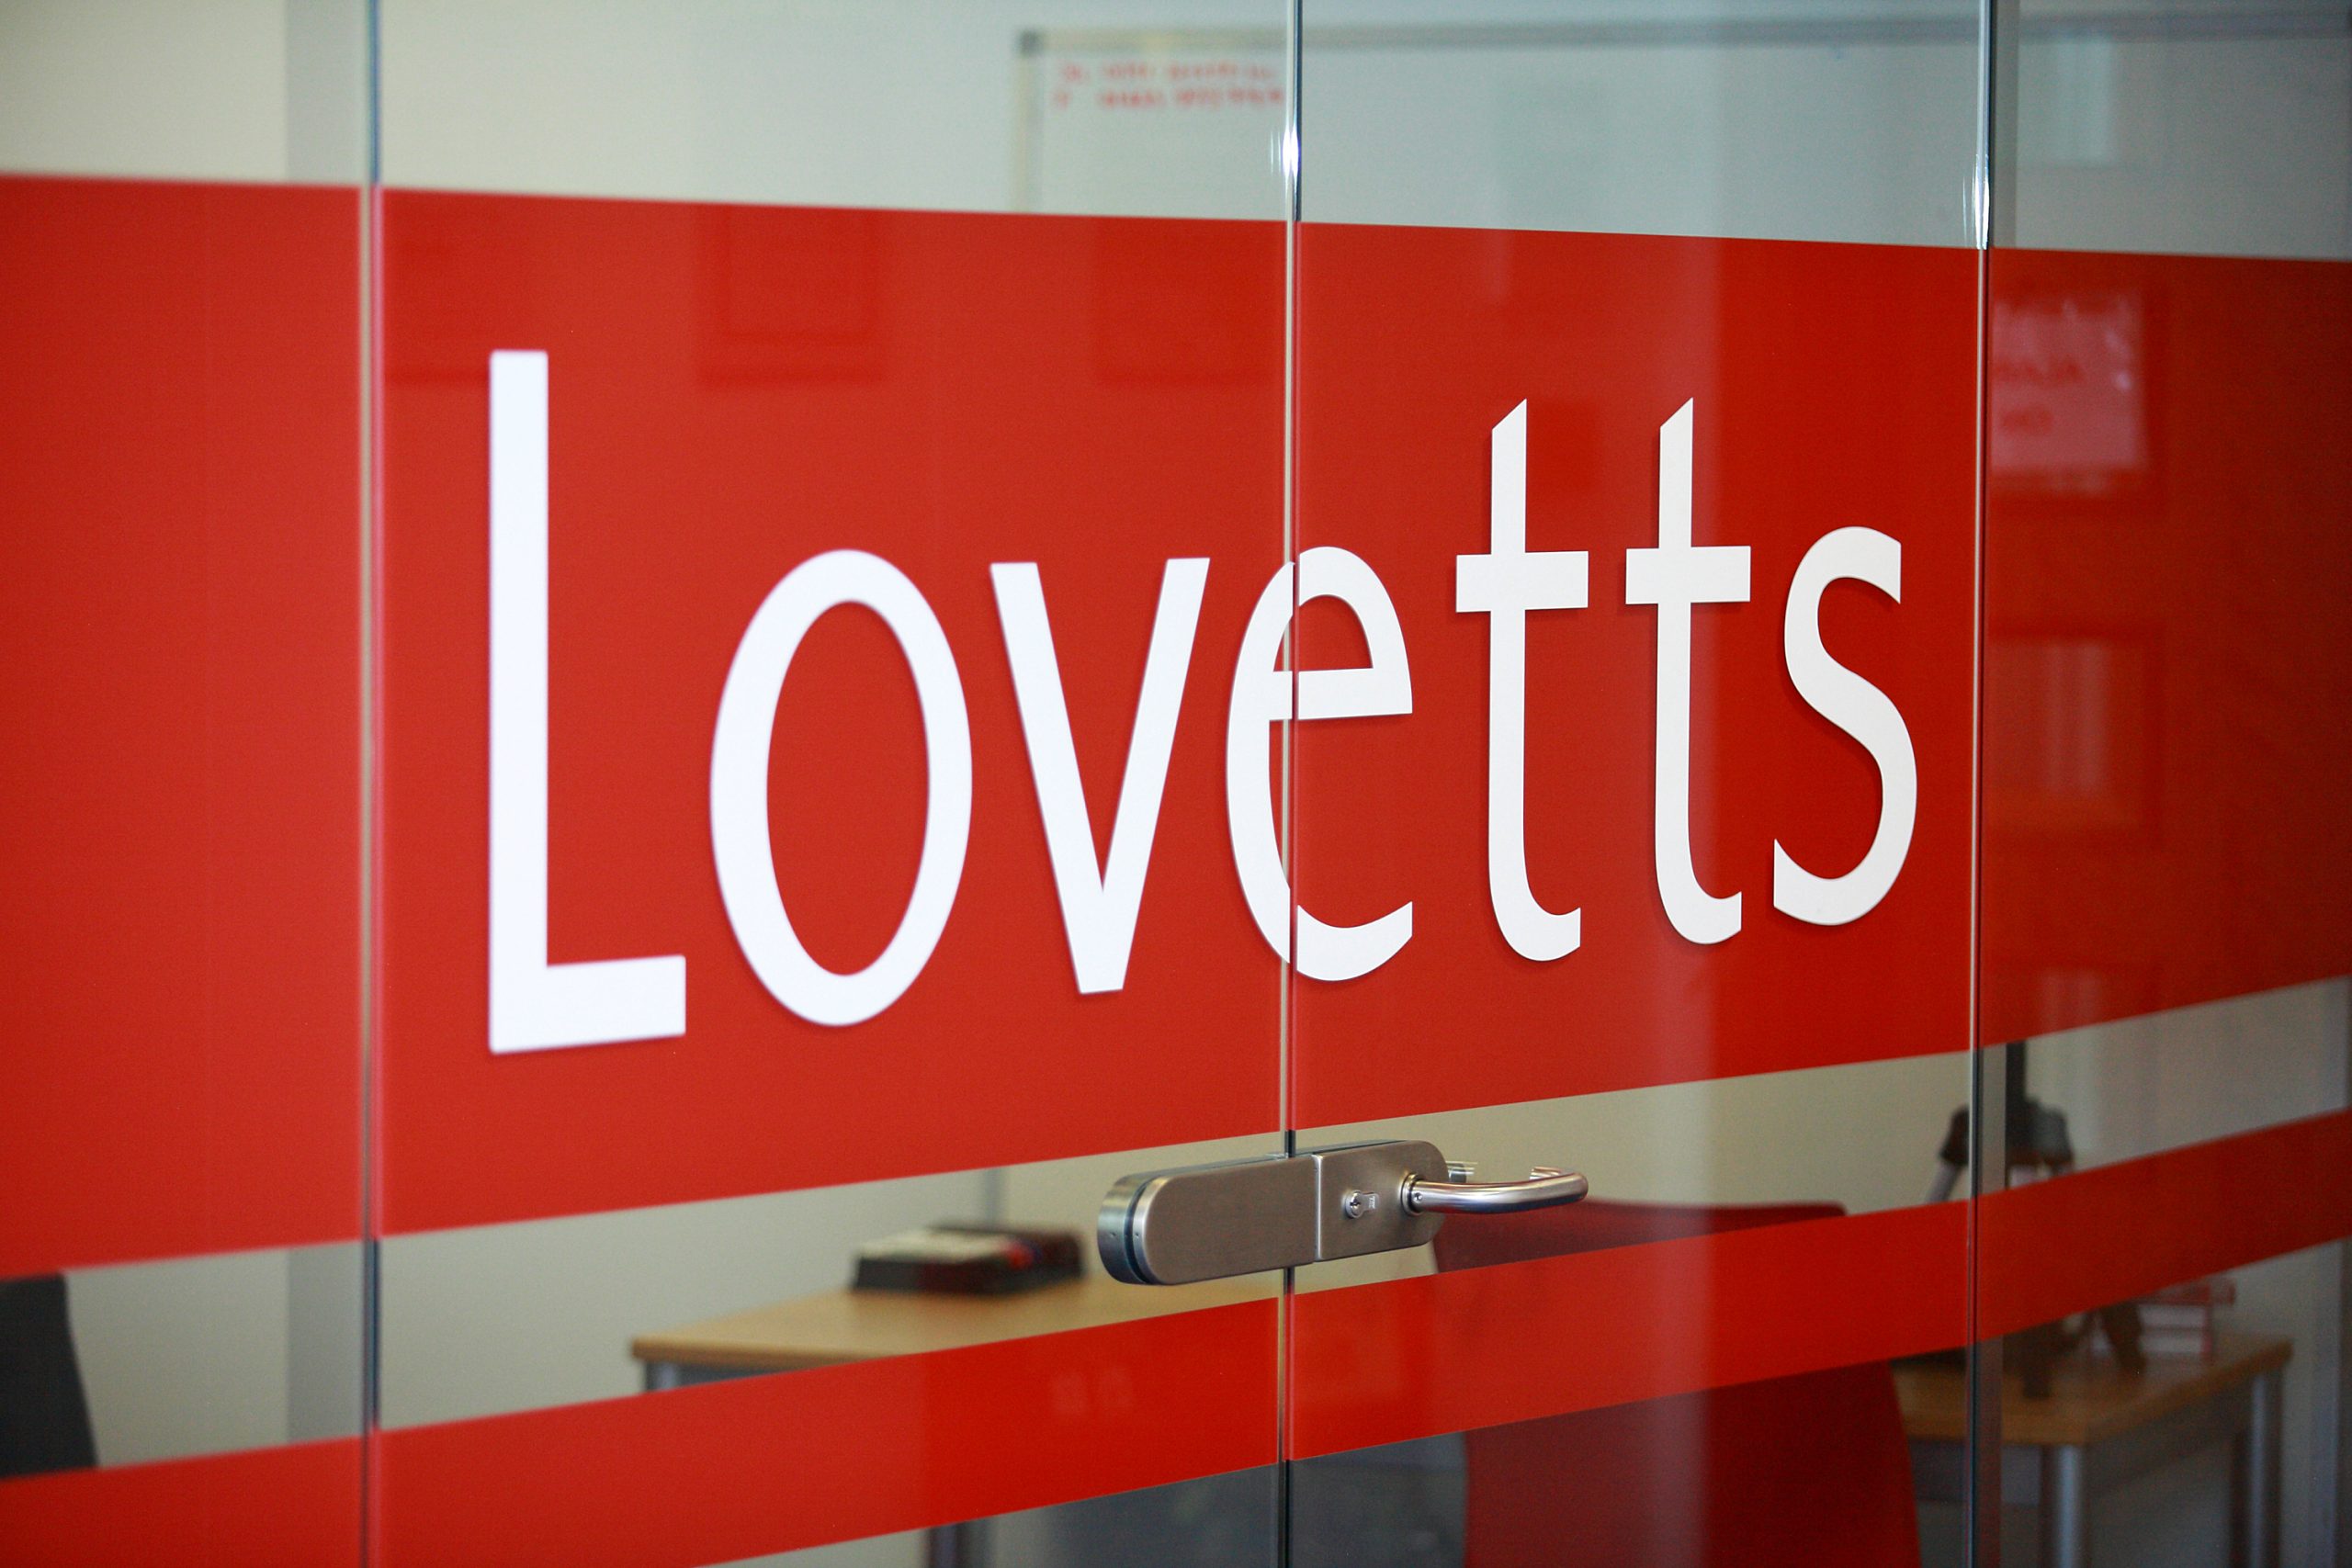 (c) Lovetts.co.uk